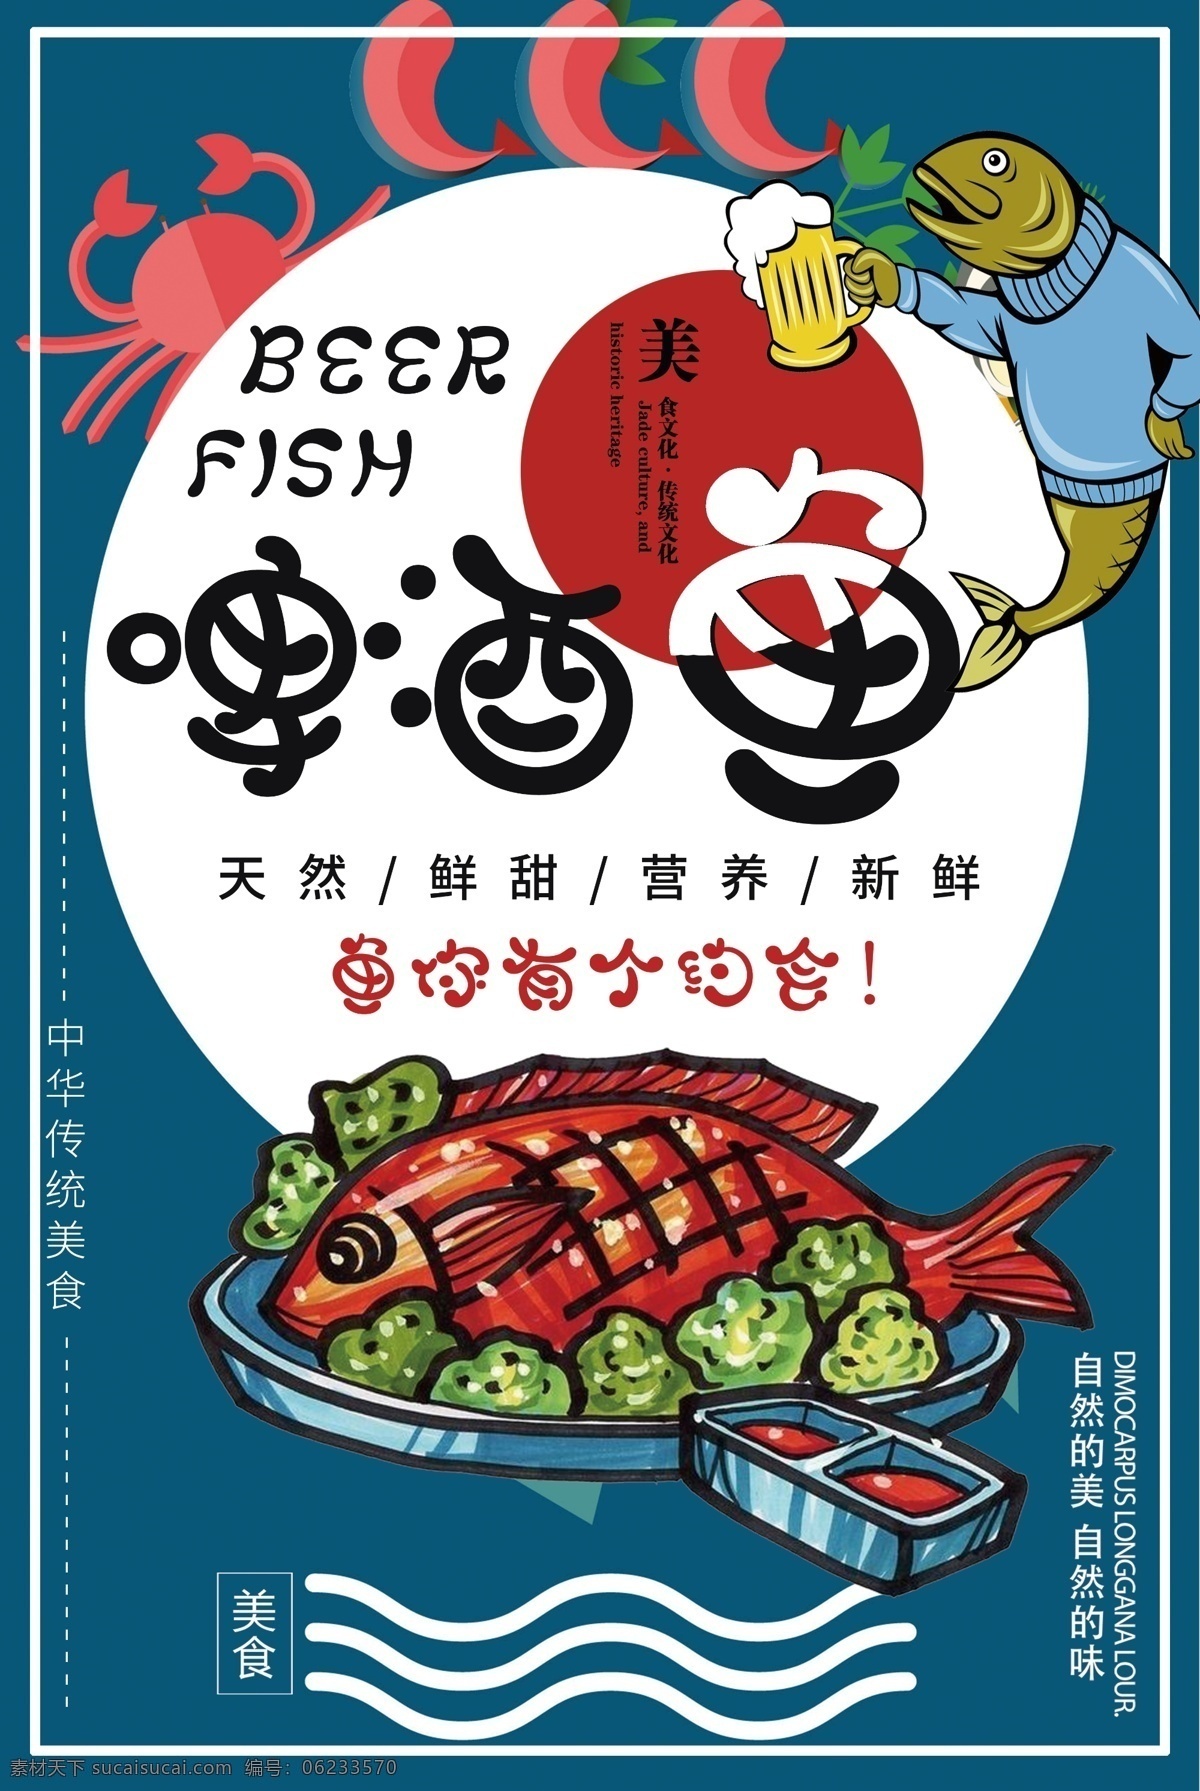 蓝色 啤酒 鱼 促销 餐饮海报 食物海报 超市促销 新鲜食材 新鲜食物 食物促销 蔬菜促销 食材促销 新鲜鱼类 啤酒鱼